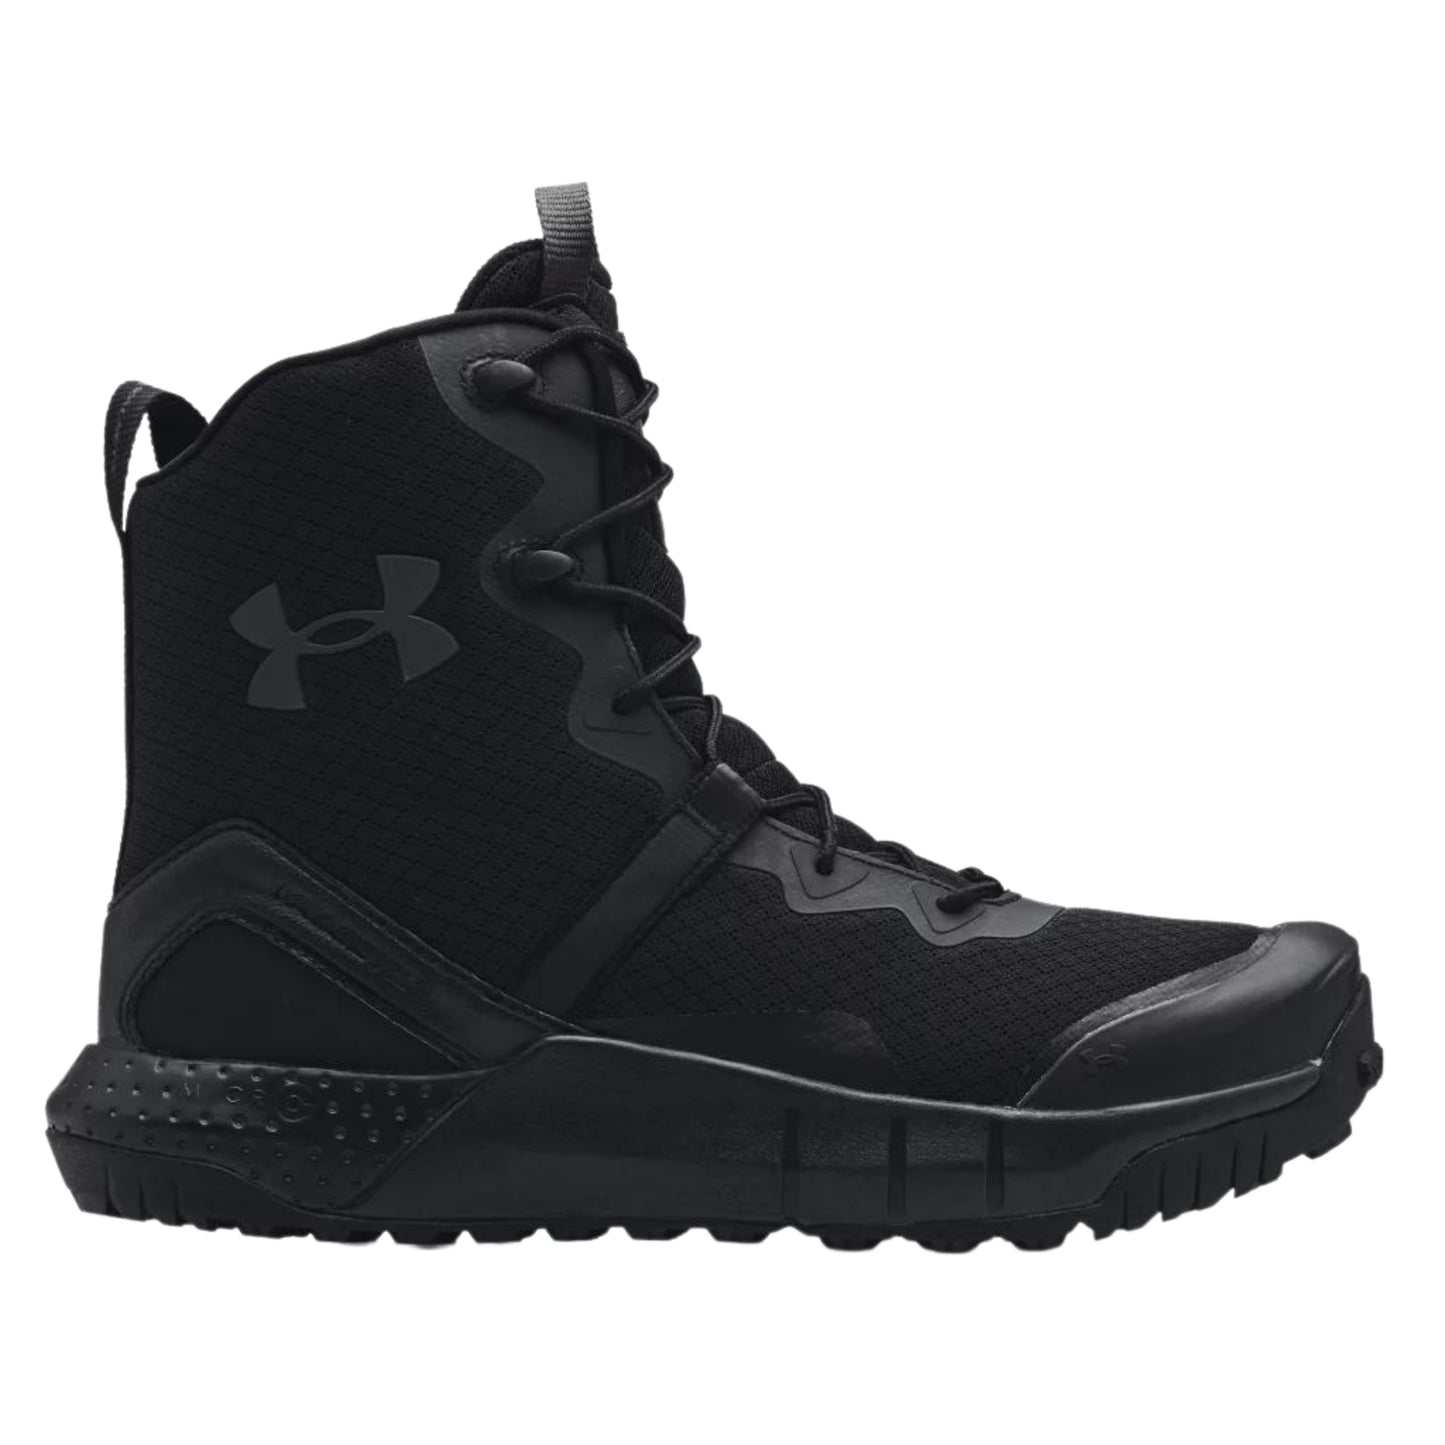 Under Armour Men's UA Micro G Valsetz Zip Leather Waterproof Tactical Boots